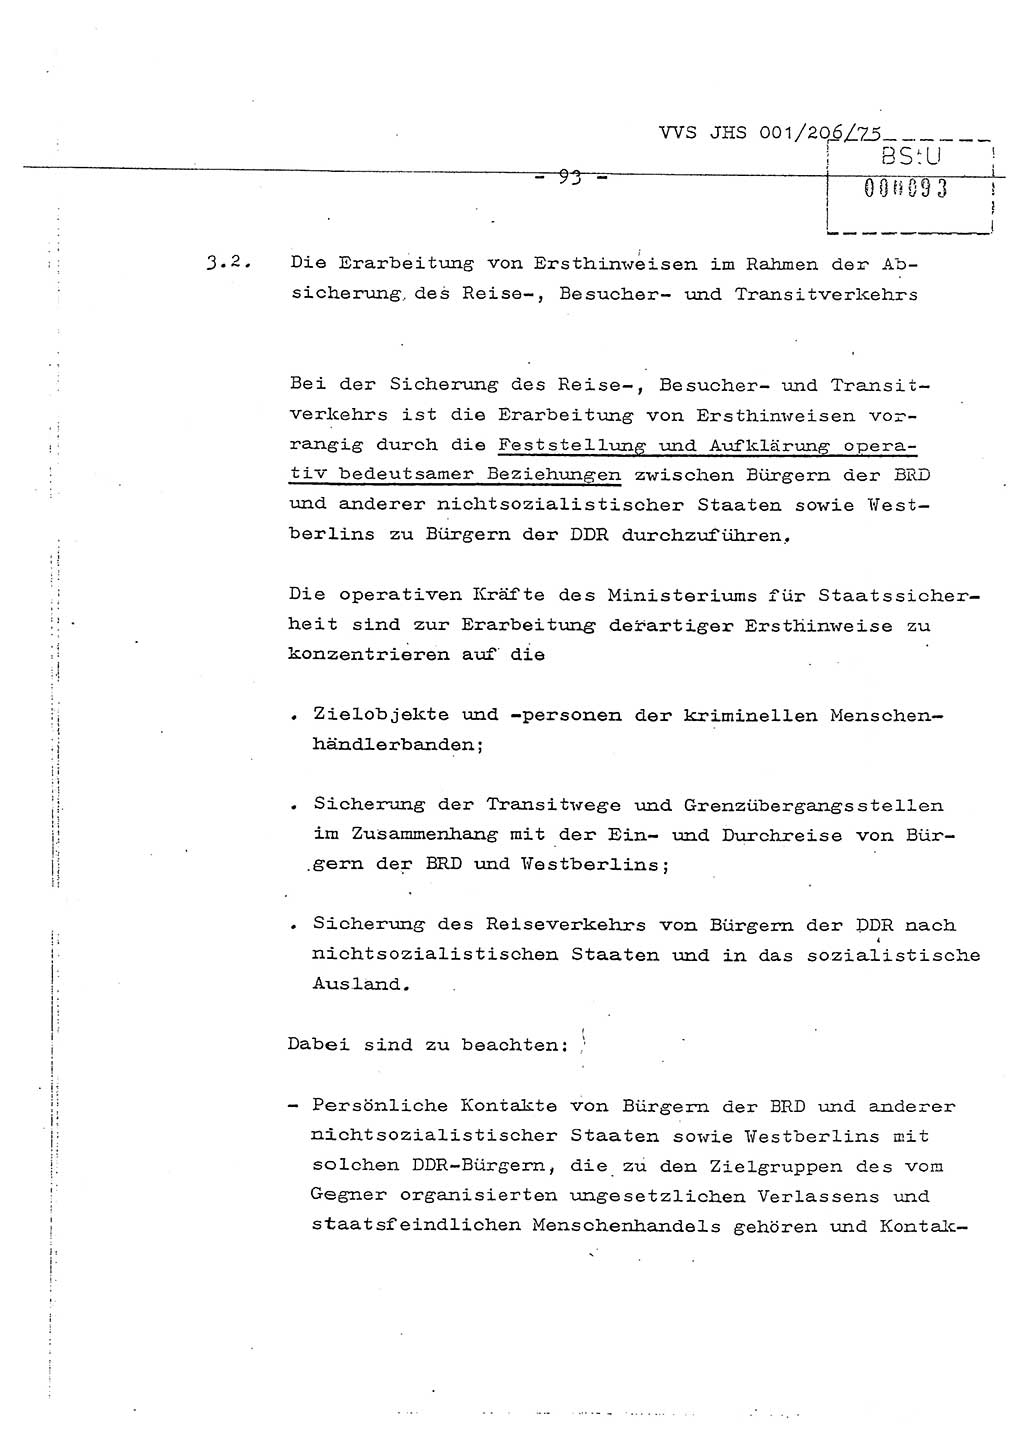 Dissertation Generalmajor Manfred Hummitzsch (Leiter der BV Leipzig), Generalmajor Heinz Fiedler (HA Ⅵ), Oberst Rolf Fister (HA Ⅸ), Ministerium für Staatssicherheit (MfS) [Deutsche Demokratische Republik (DDR)], Juristische Hochschule (JHS), Vertrauliche Verschlußsache (VVS) 001-206/75, Potsdam 1975, Seite 93 (Diss. MfS DDR JHS VVS 001-206/75 1975, S. 93)